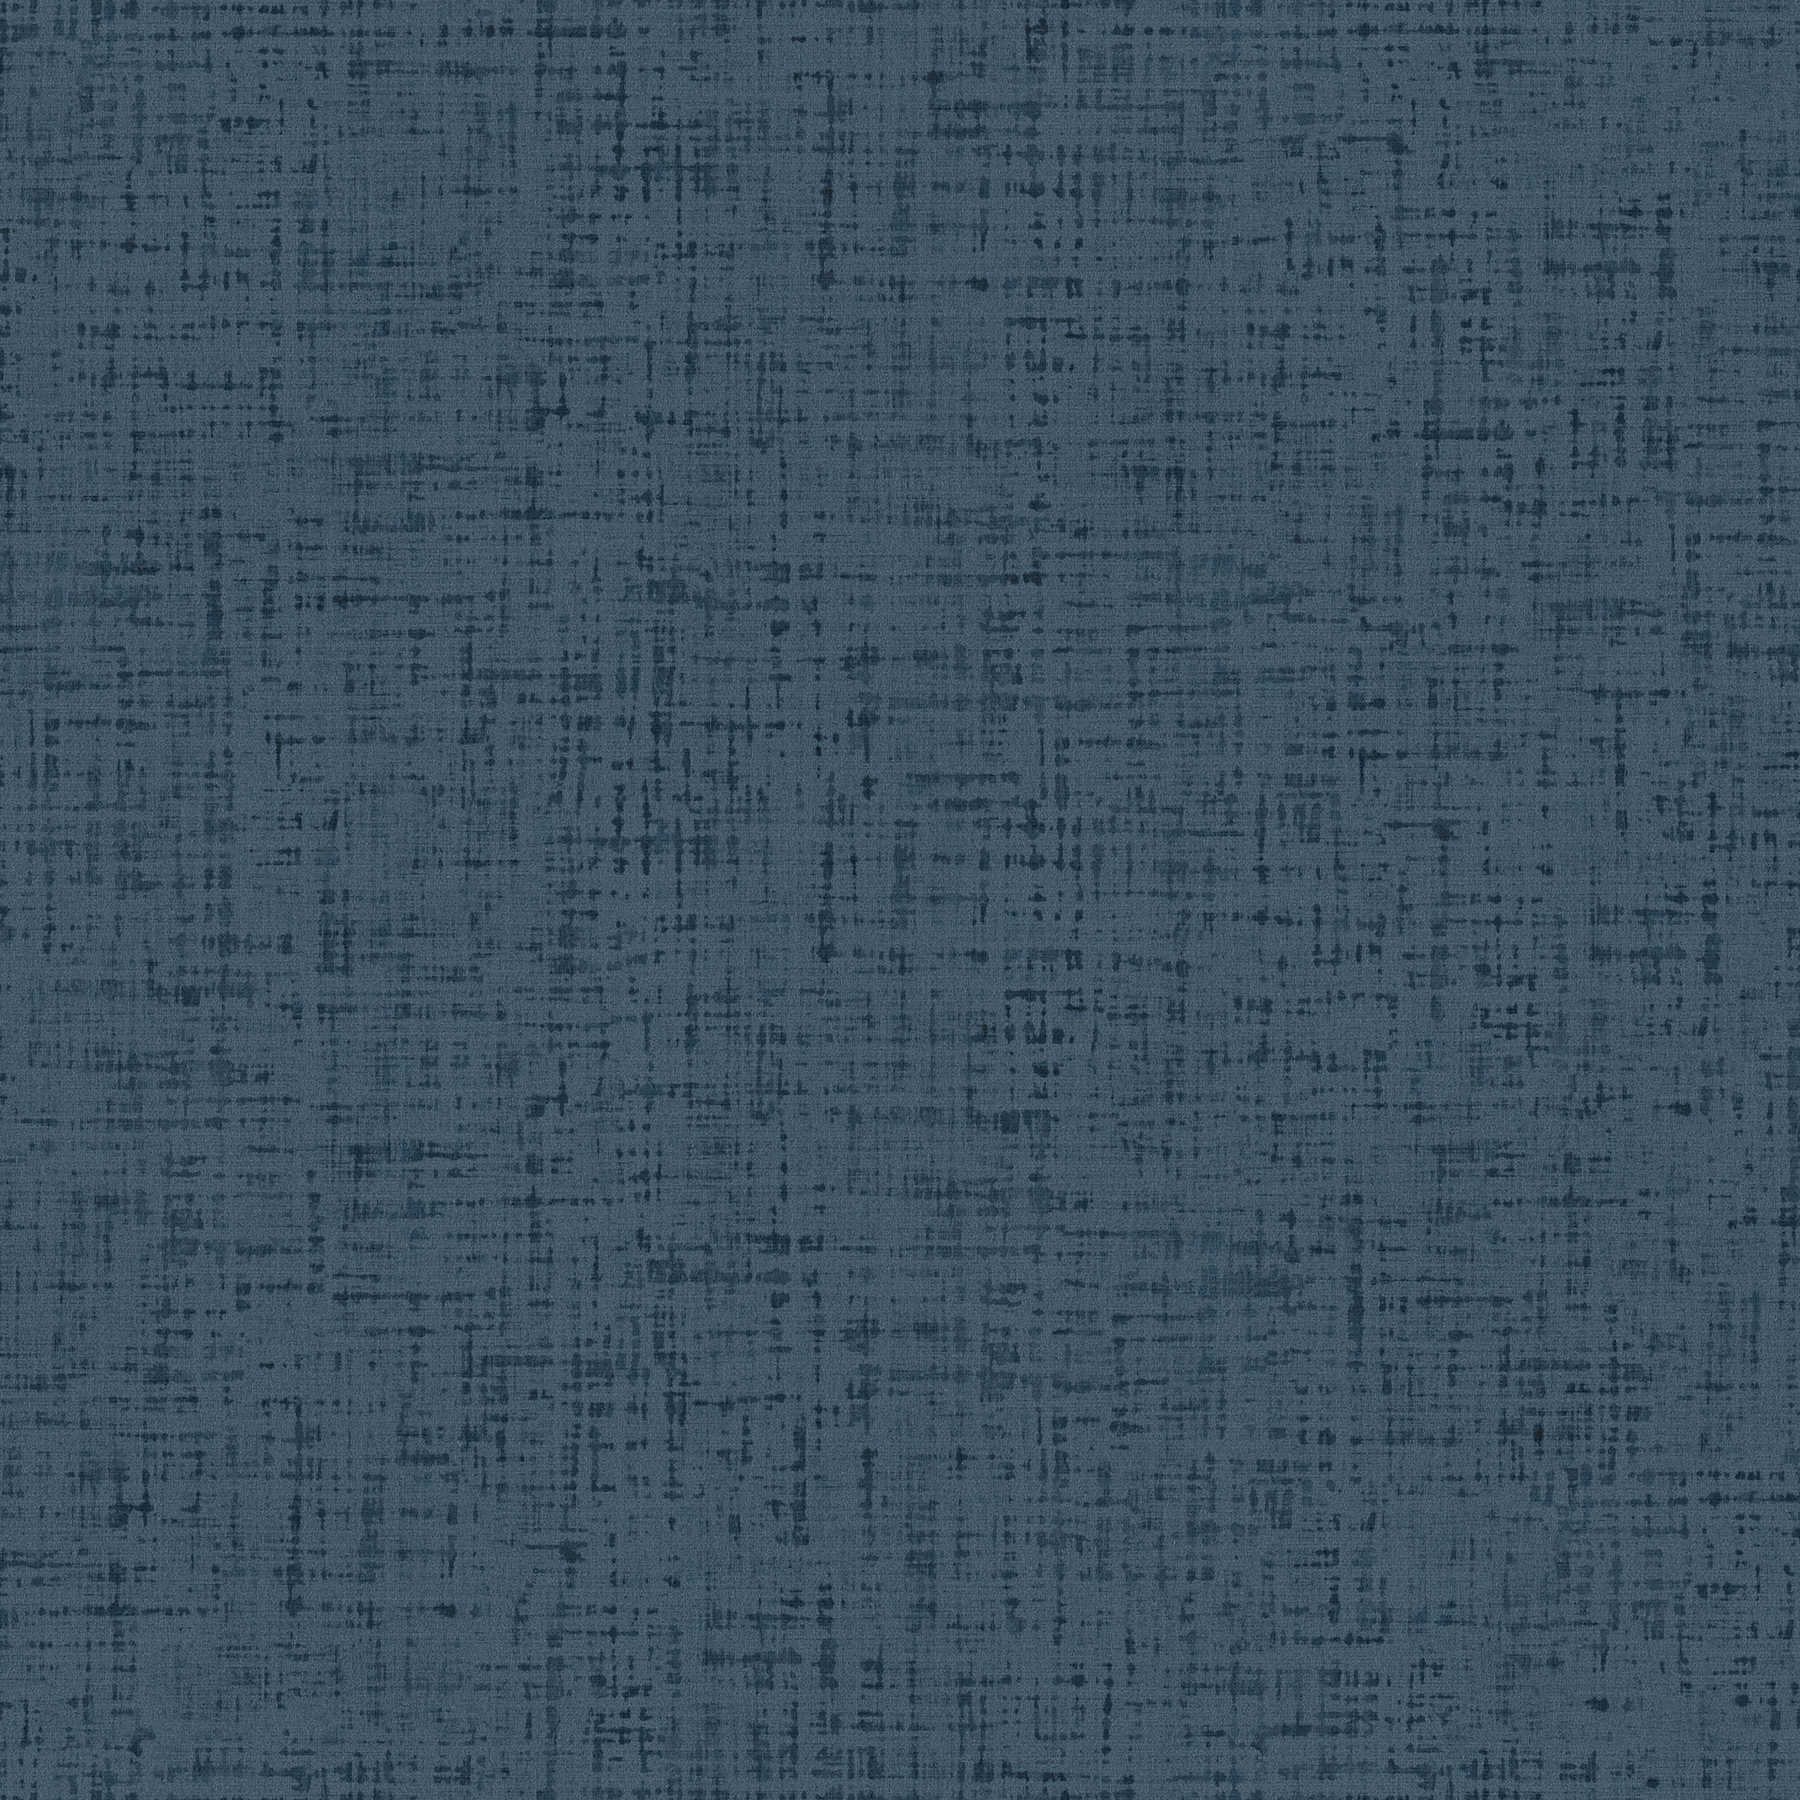 Patroonbehang tweed-look gevlekt, textiel-look - blauw
